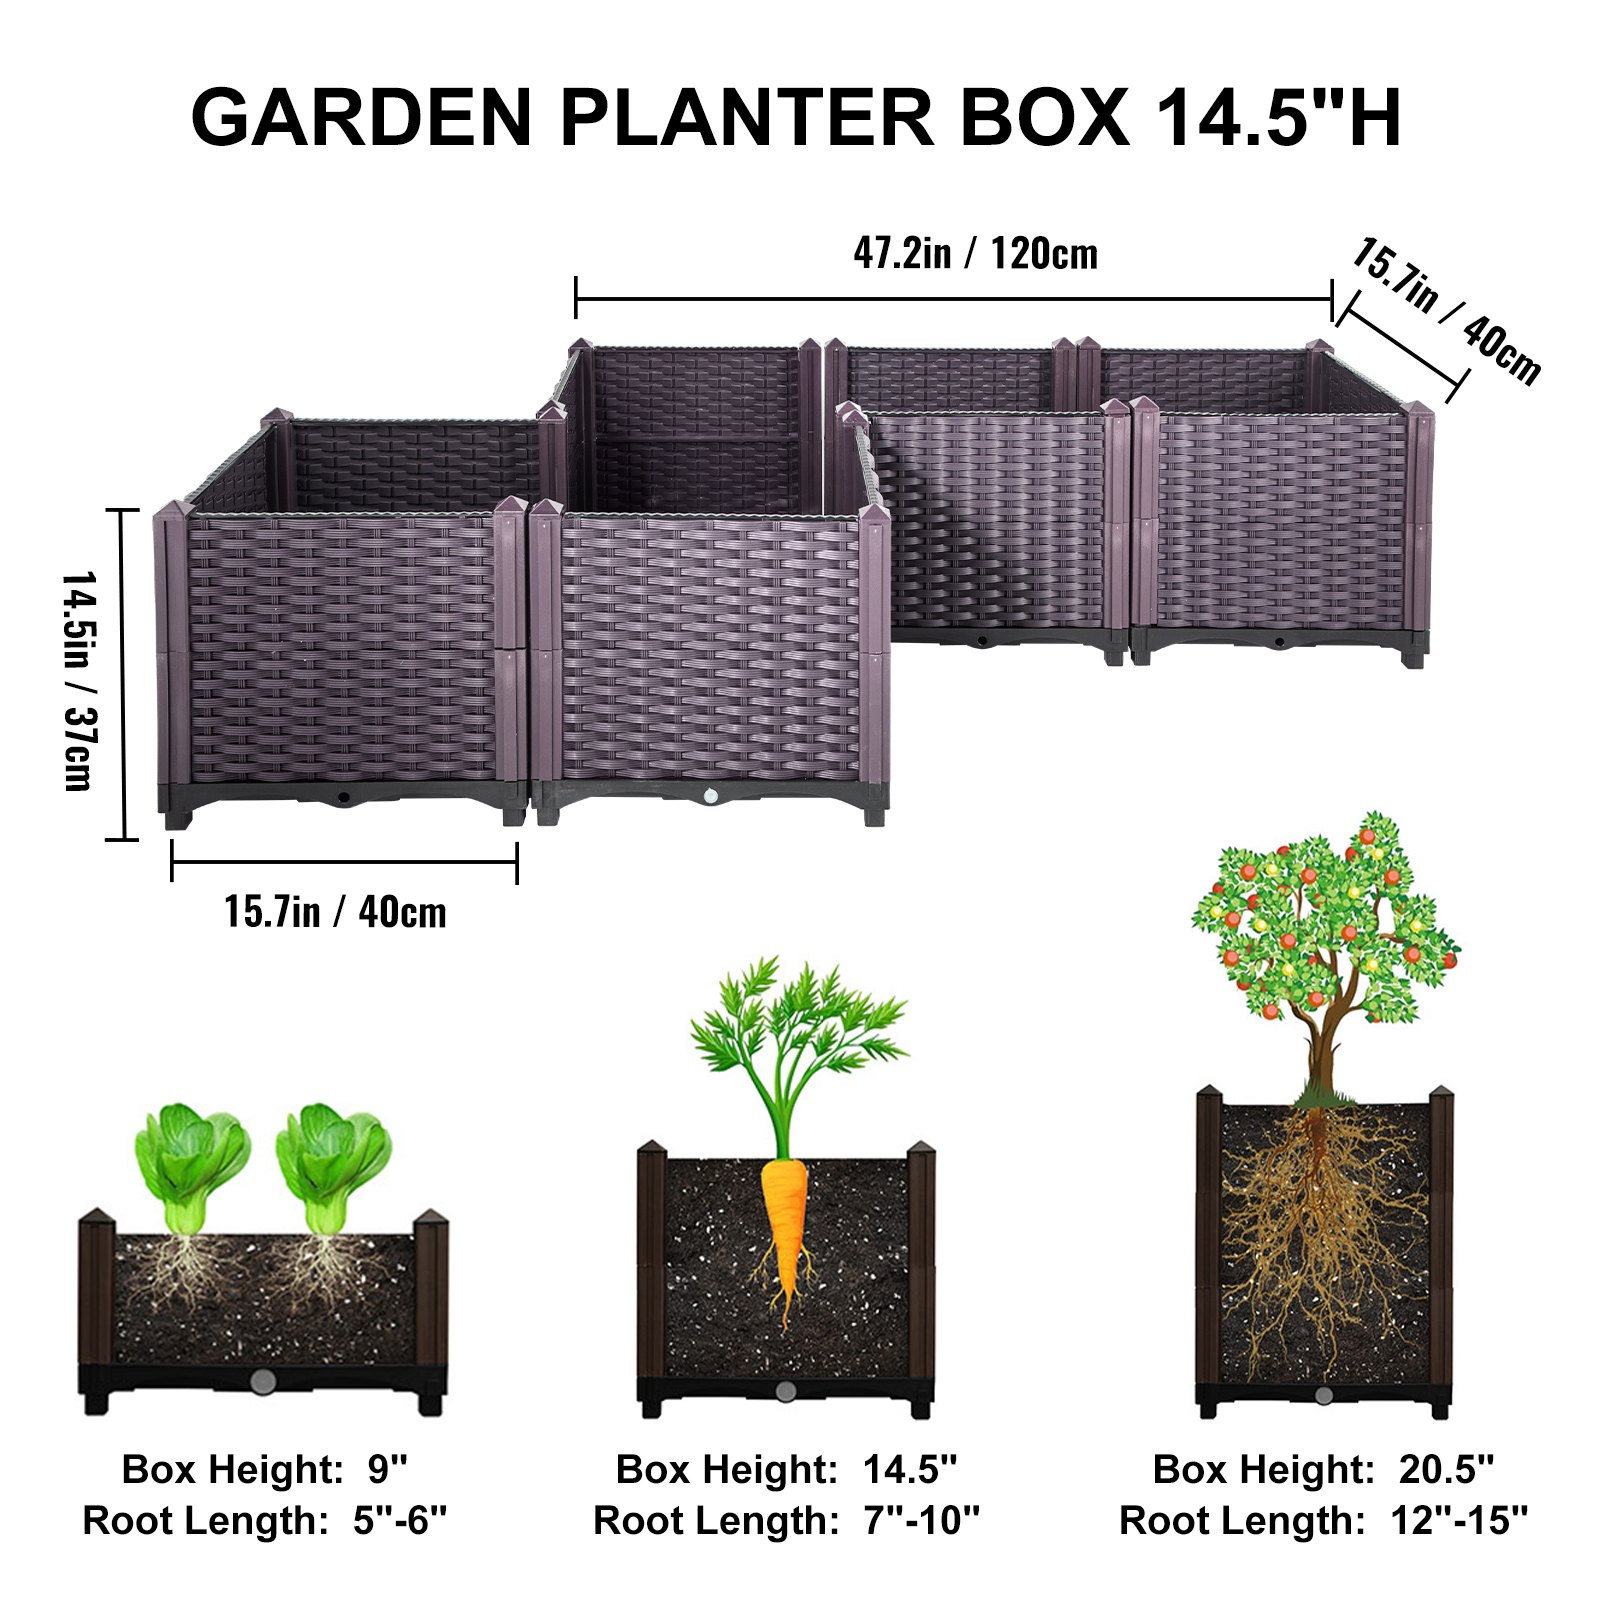 VEVOR Plastic Raised Garden Bed, 14.5H Flower Box Kit, Brown Rattan ...